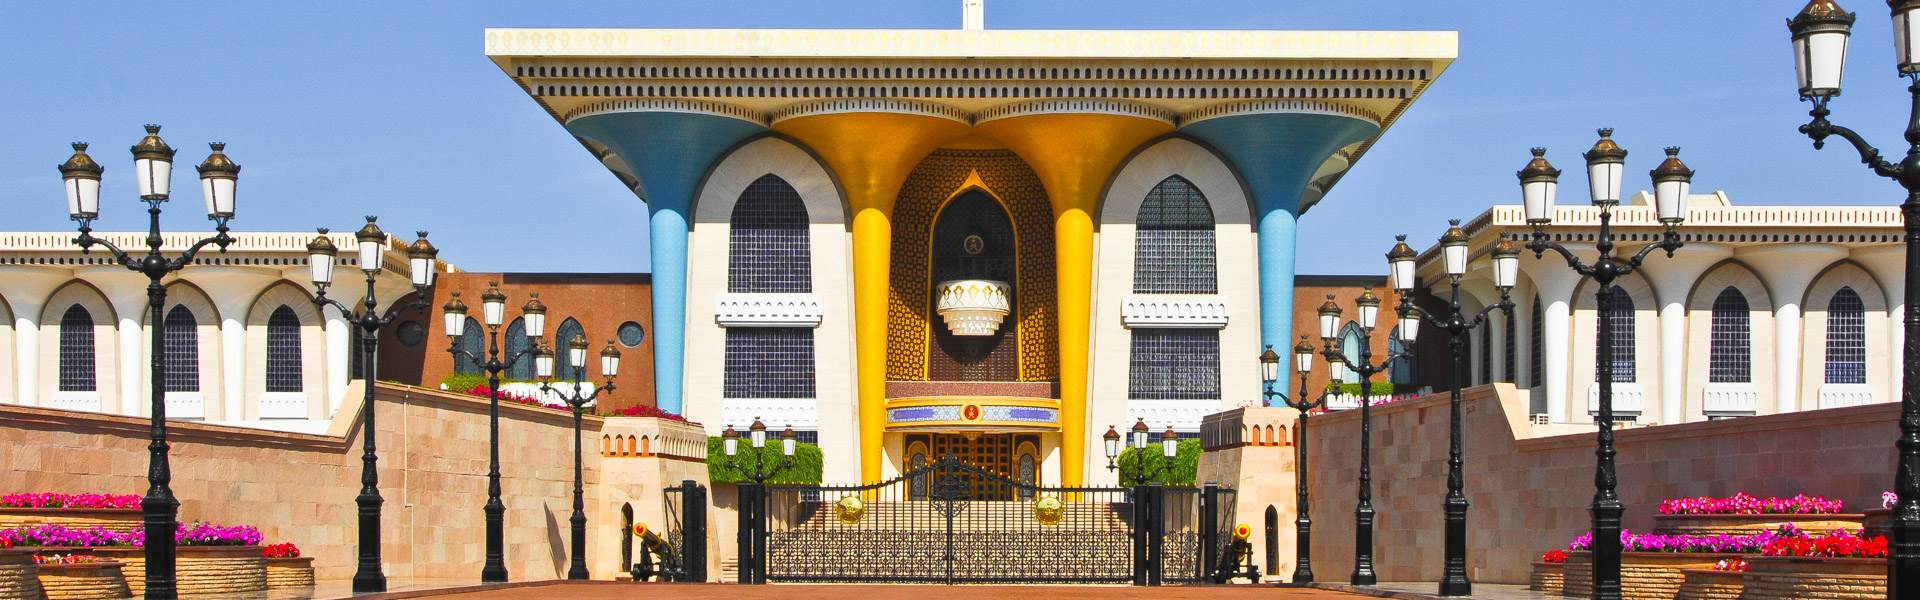 Sultanspalast, Maskat, Oman